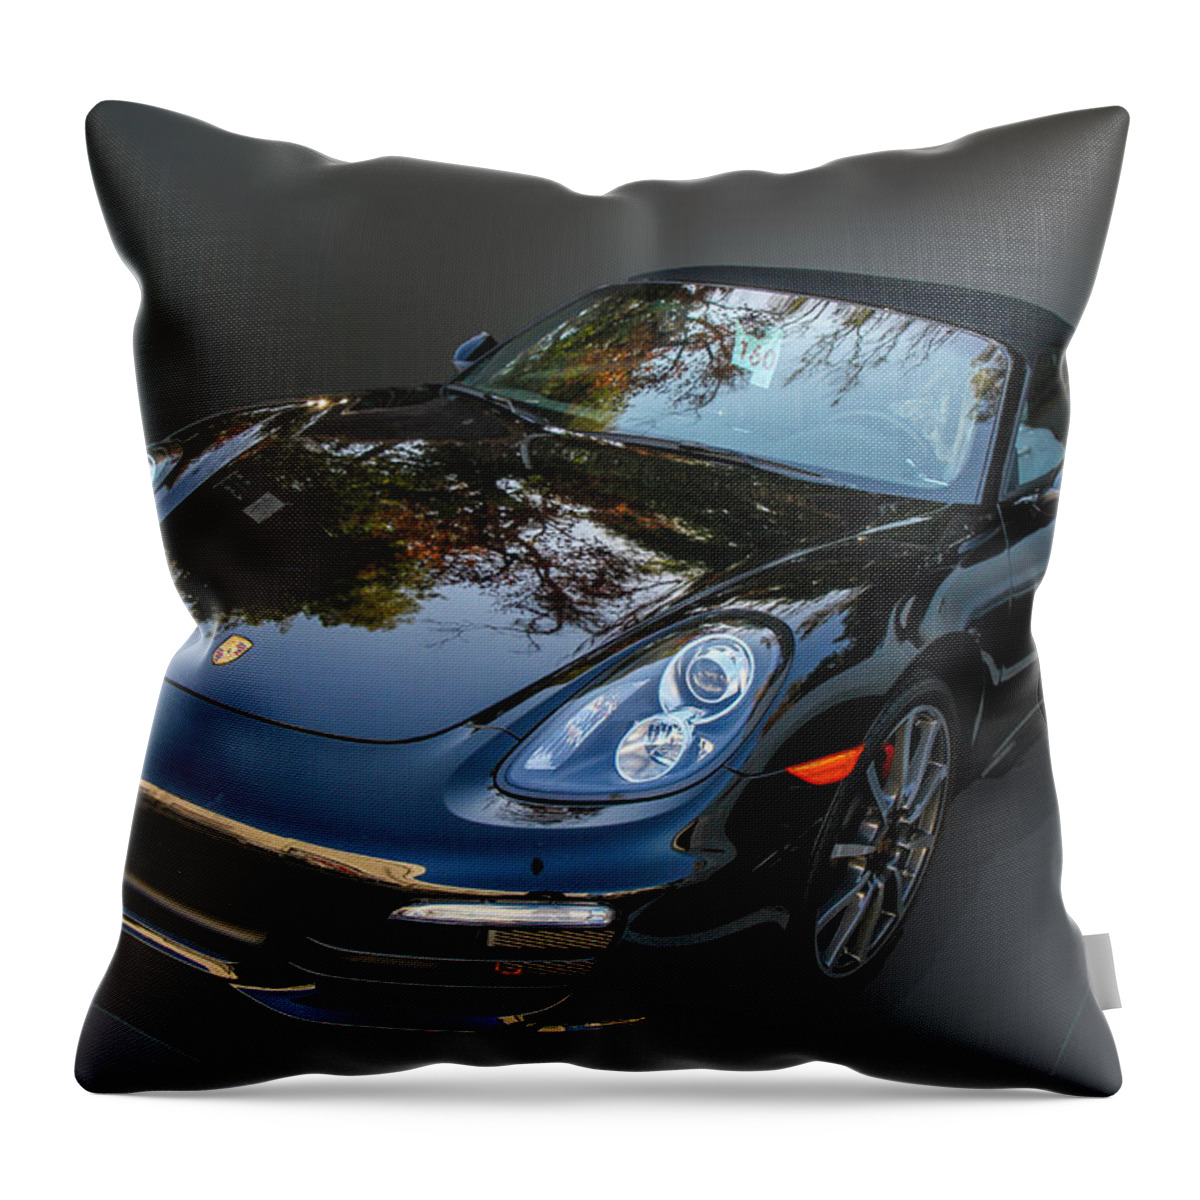 Porsche Throw Pillow featuring the photograph Black Porsche by Robert Hebert